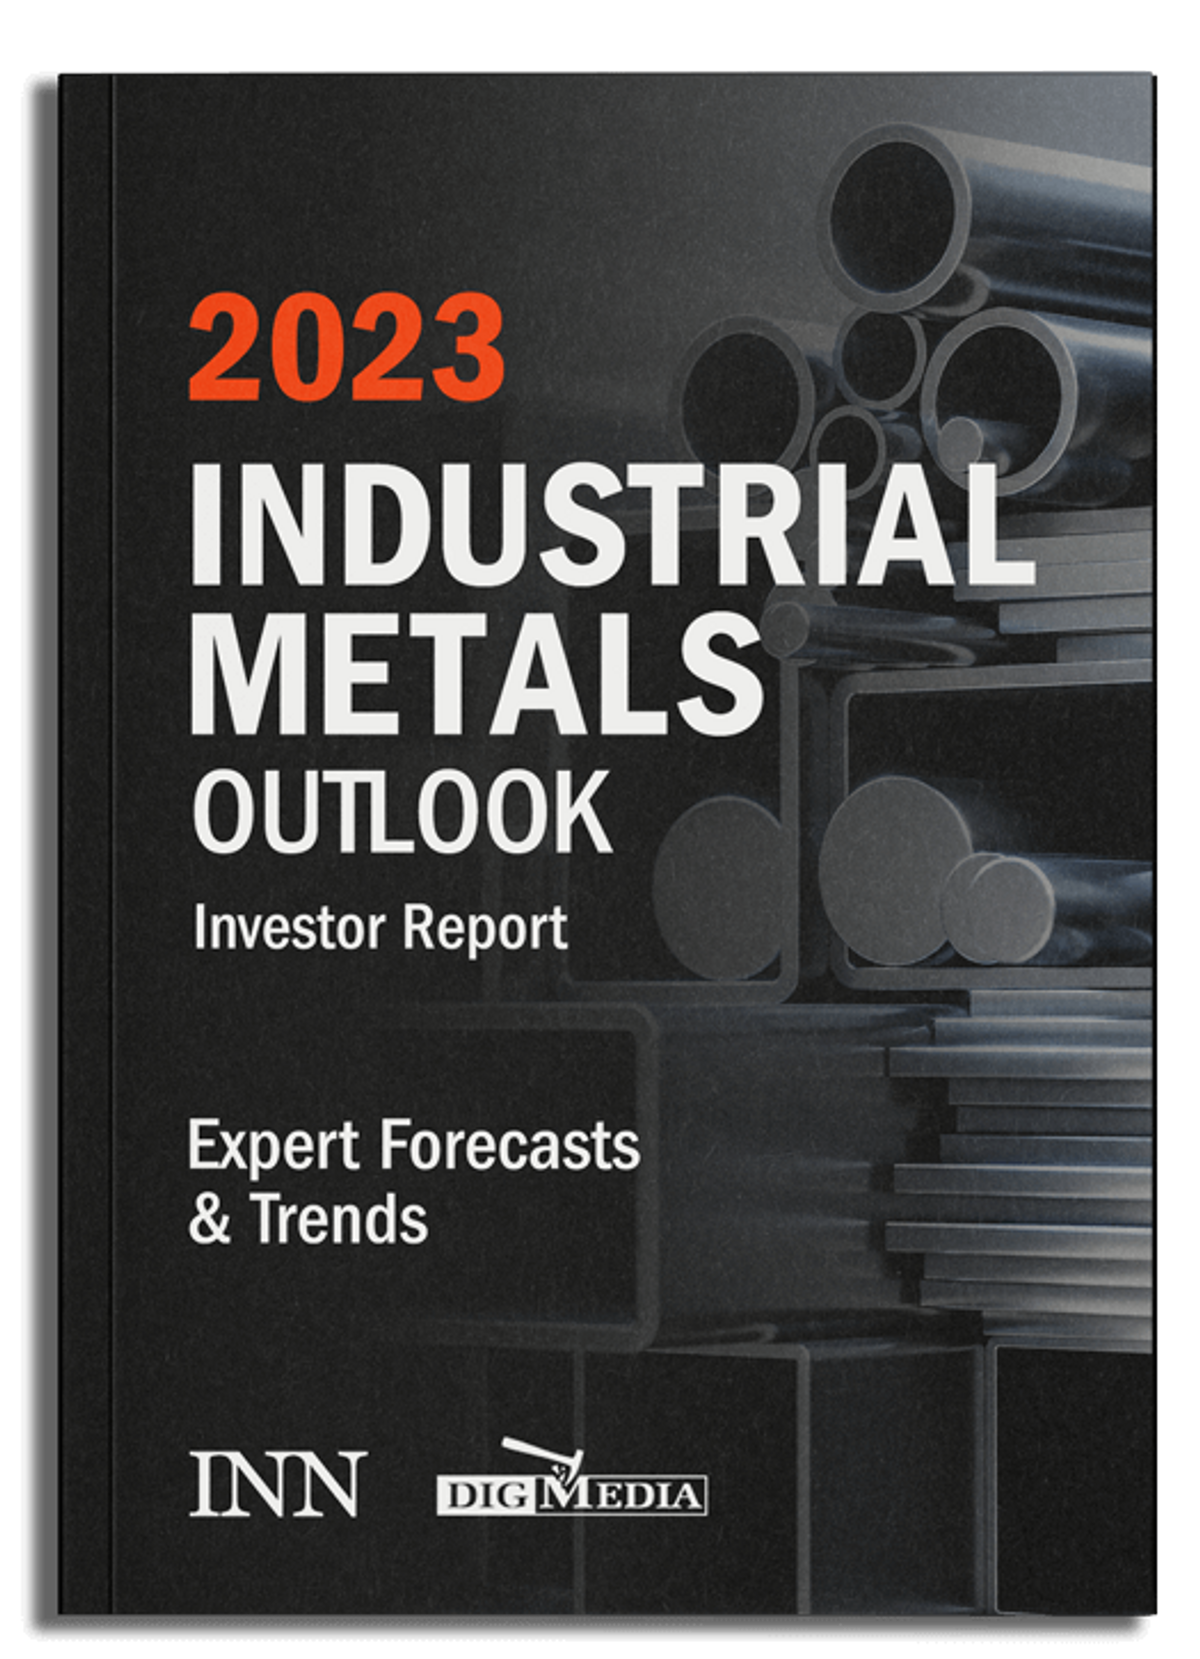 NEW! 2023 Industrial Metals Outlook Report.